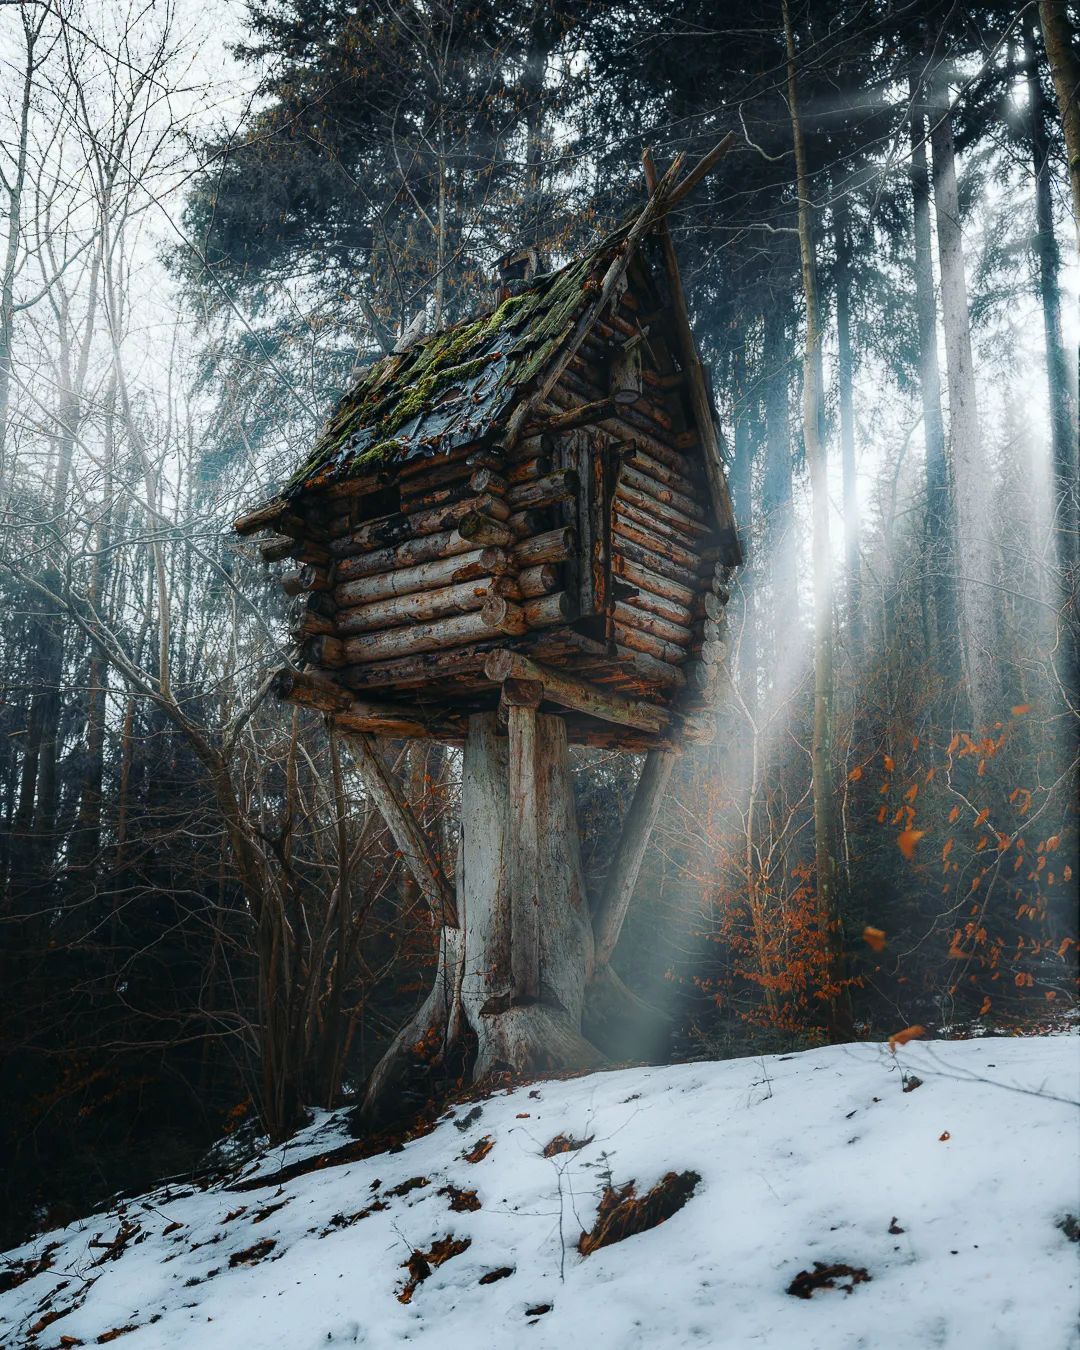 1080x1350, 365 Kb / избушка, дом, лес, снег